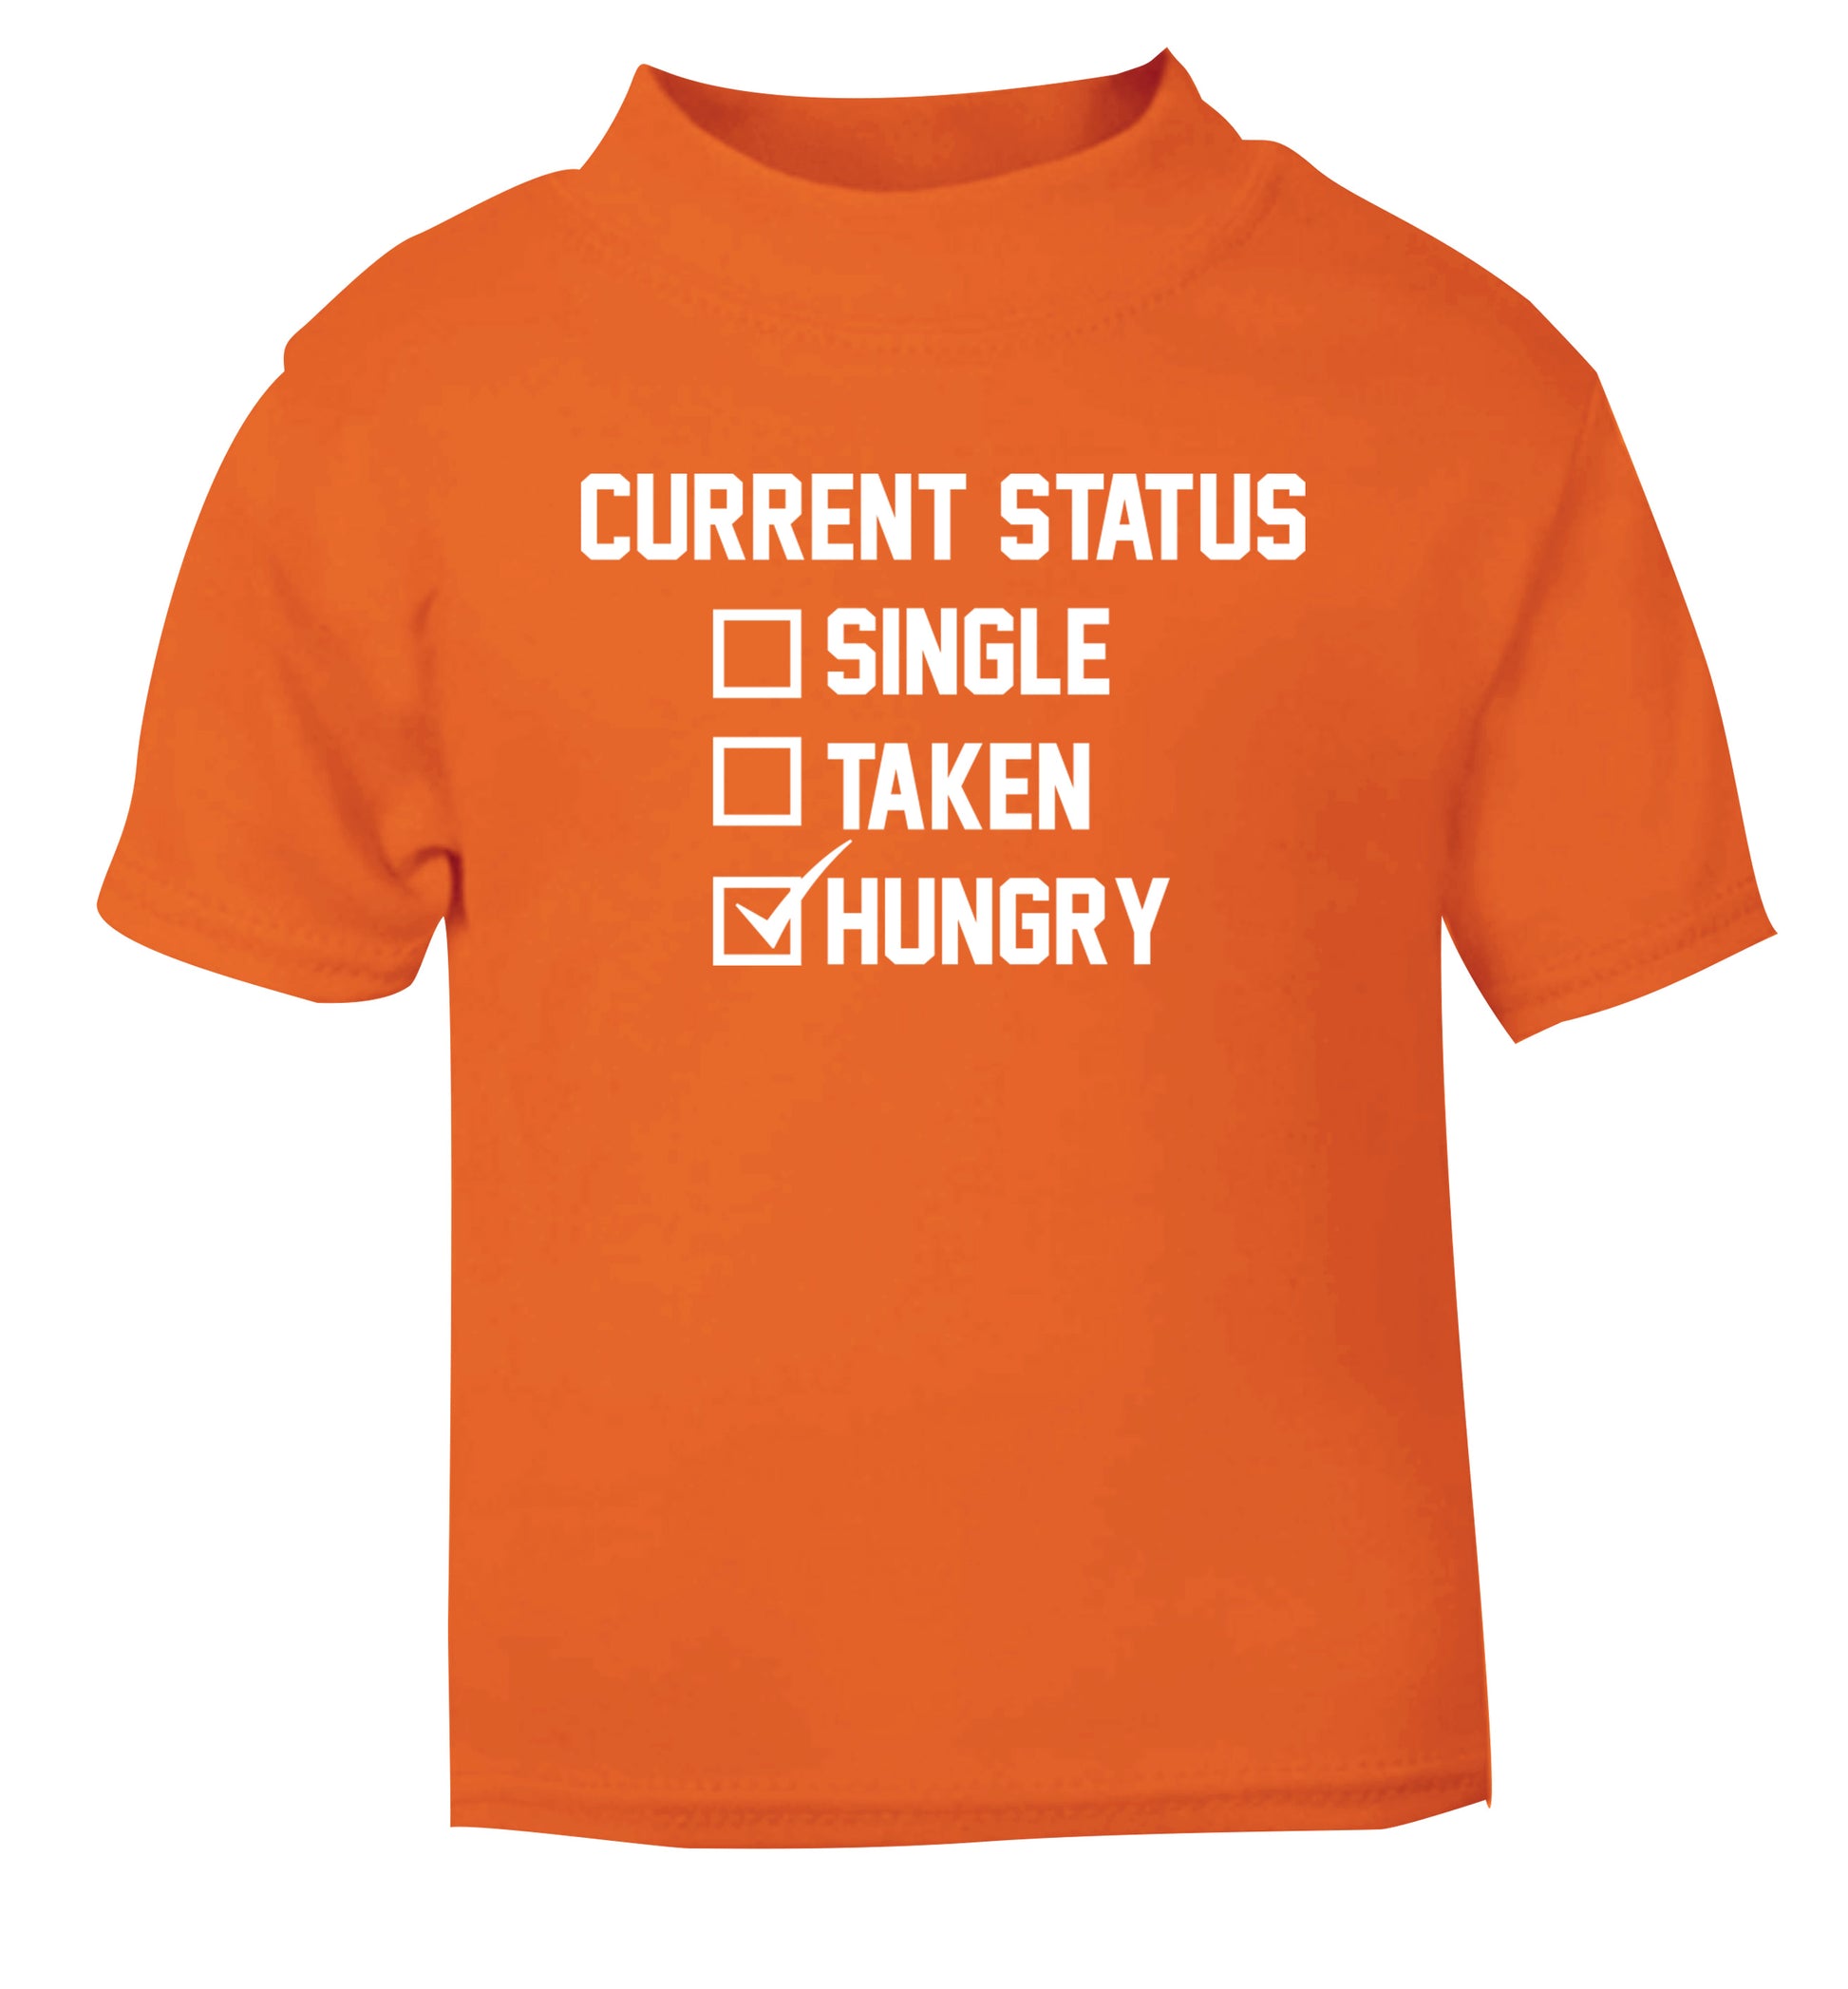 Relationship status single taken hungry orange Baby Toddler Tshirt 2 Years